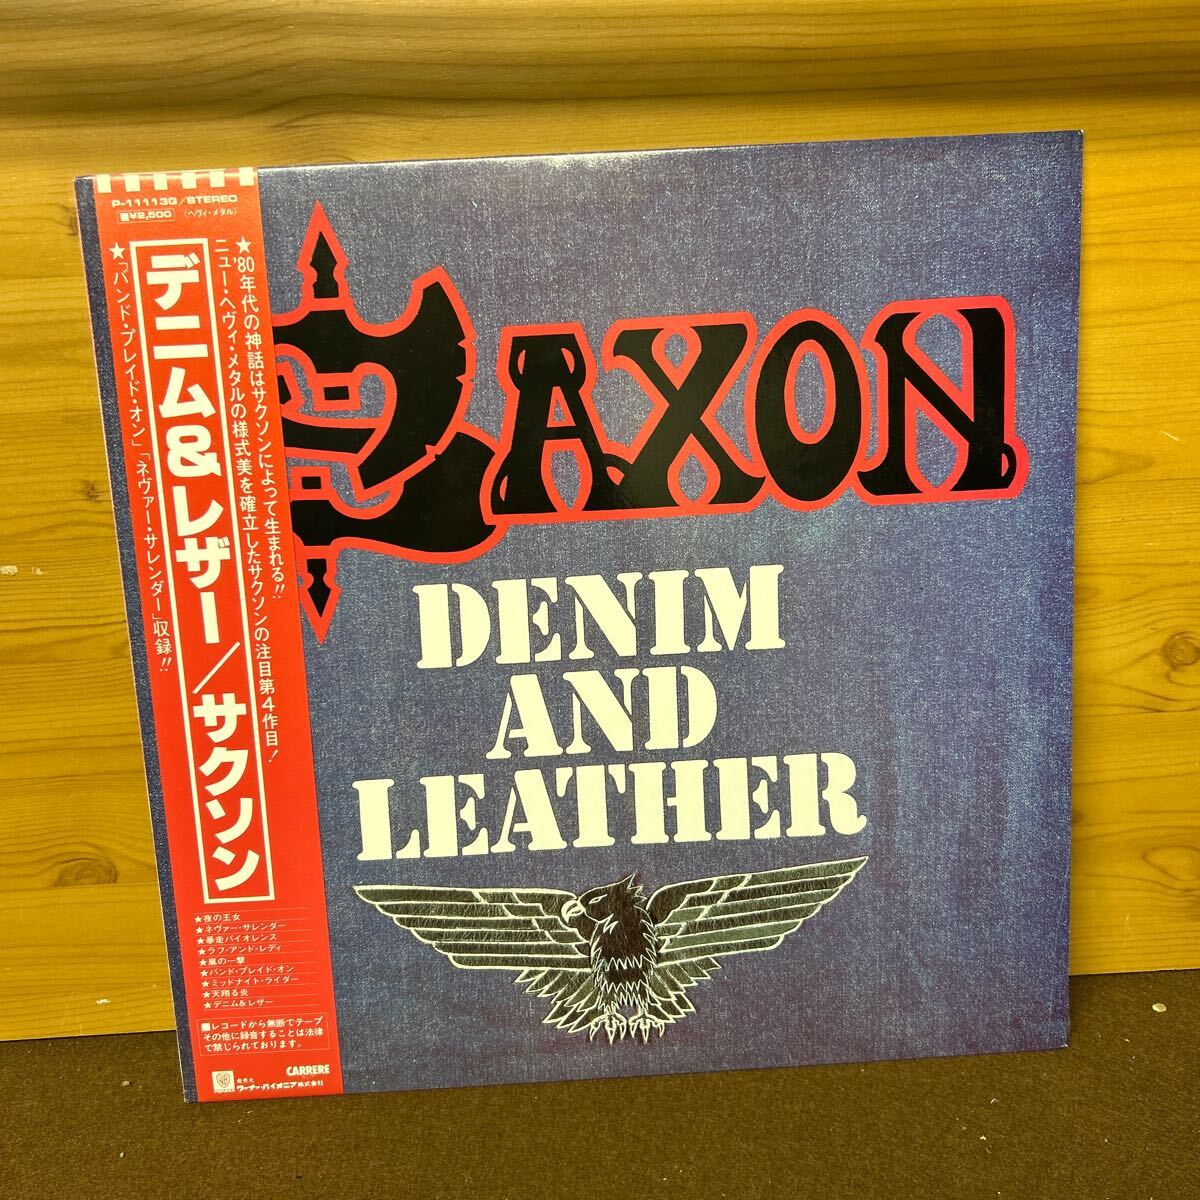 サクソン SAXON 帯付 LP レコード の画像1